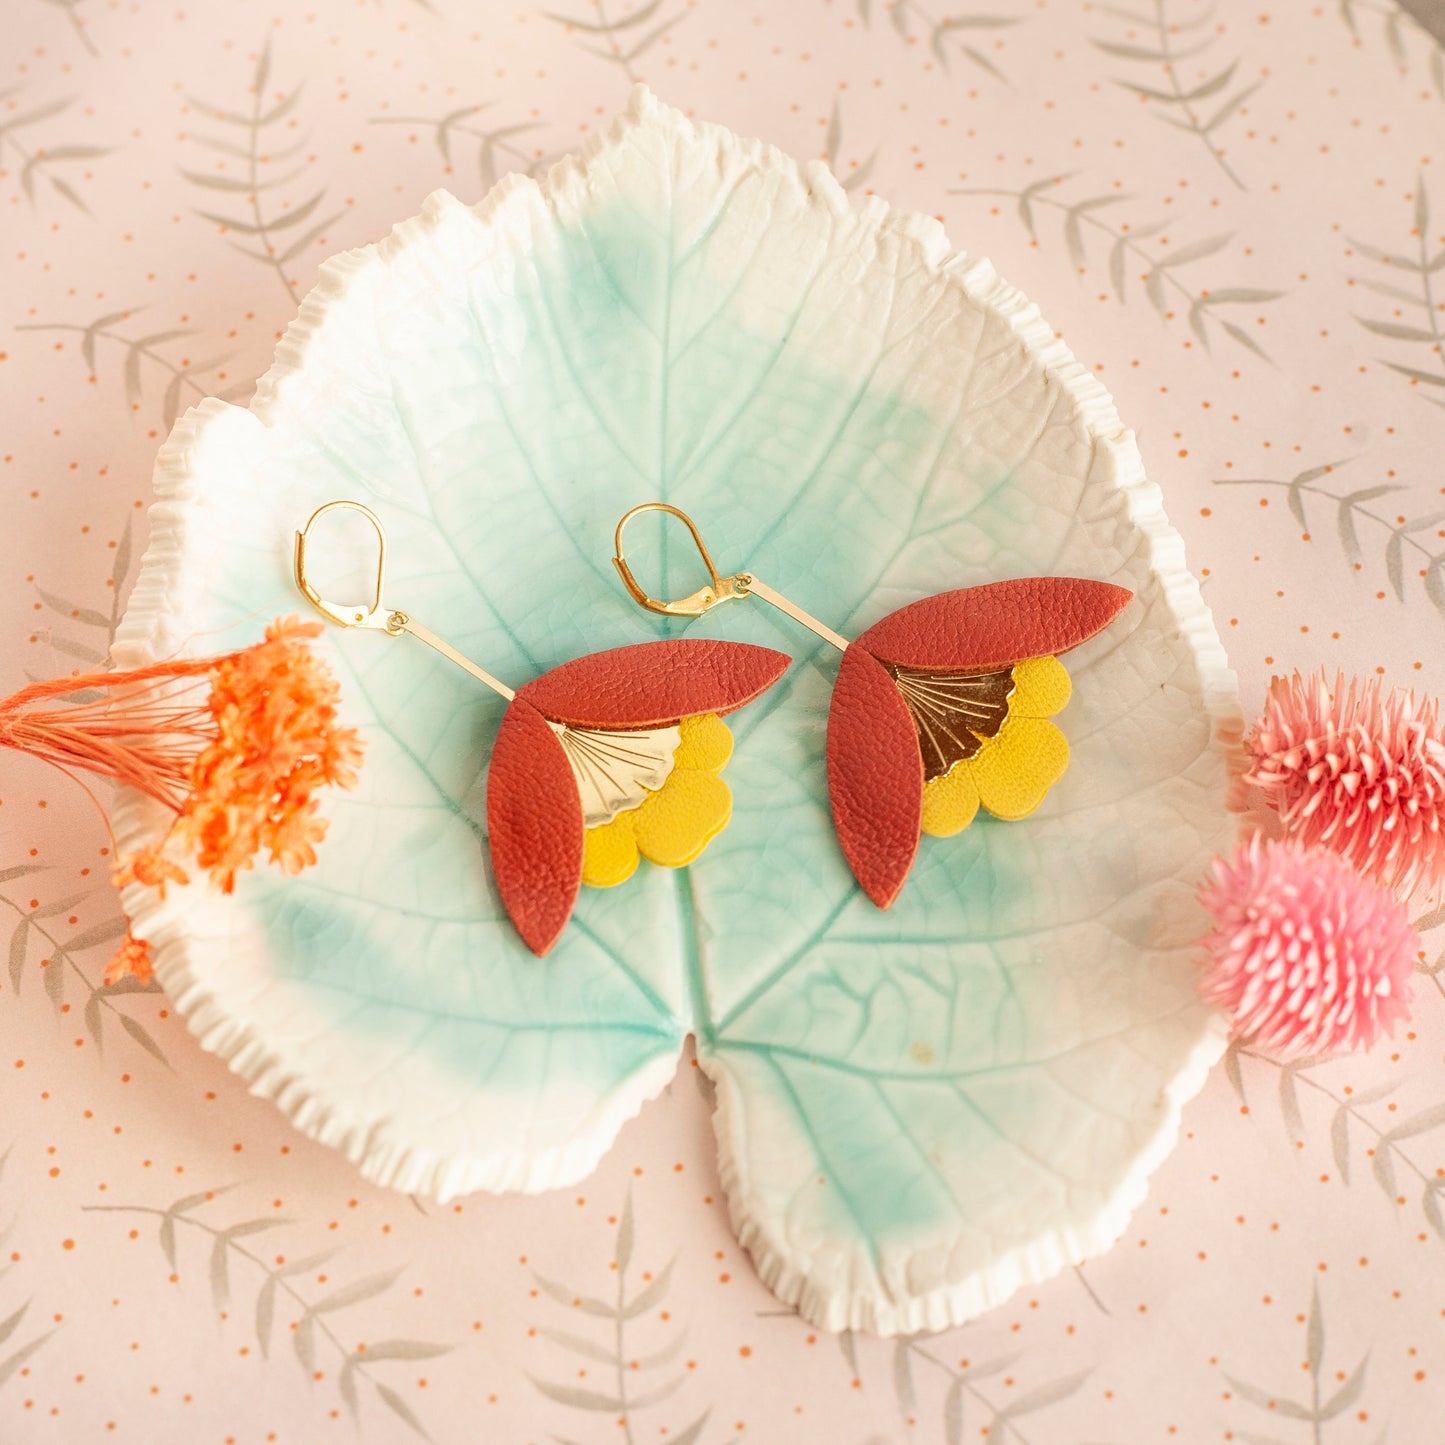 Ginkgo-Blumenohrringe aus Terrakotta und gelbem Leder